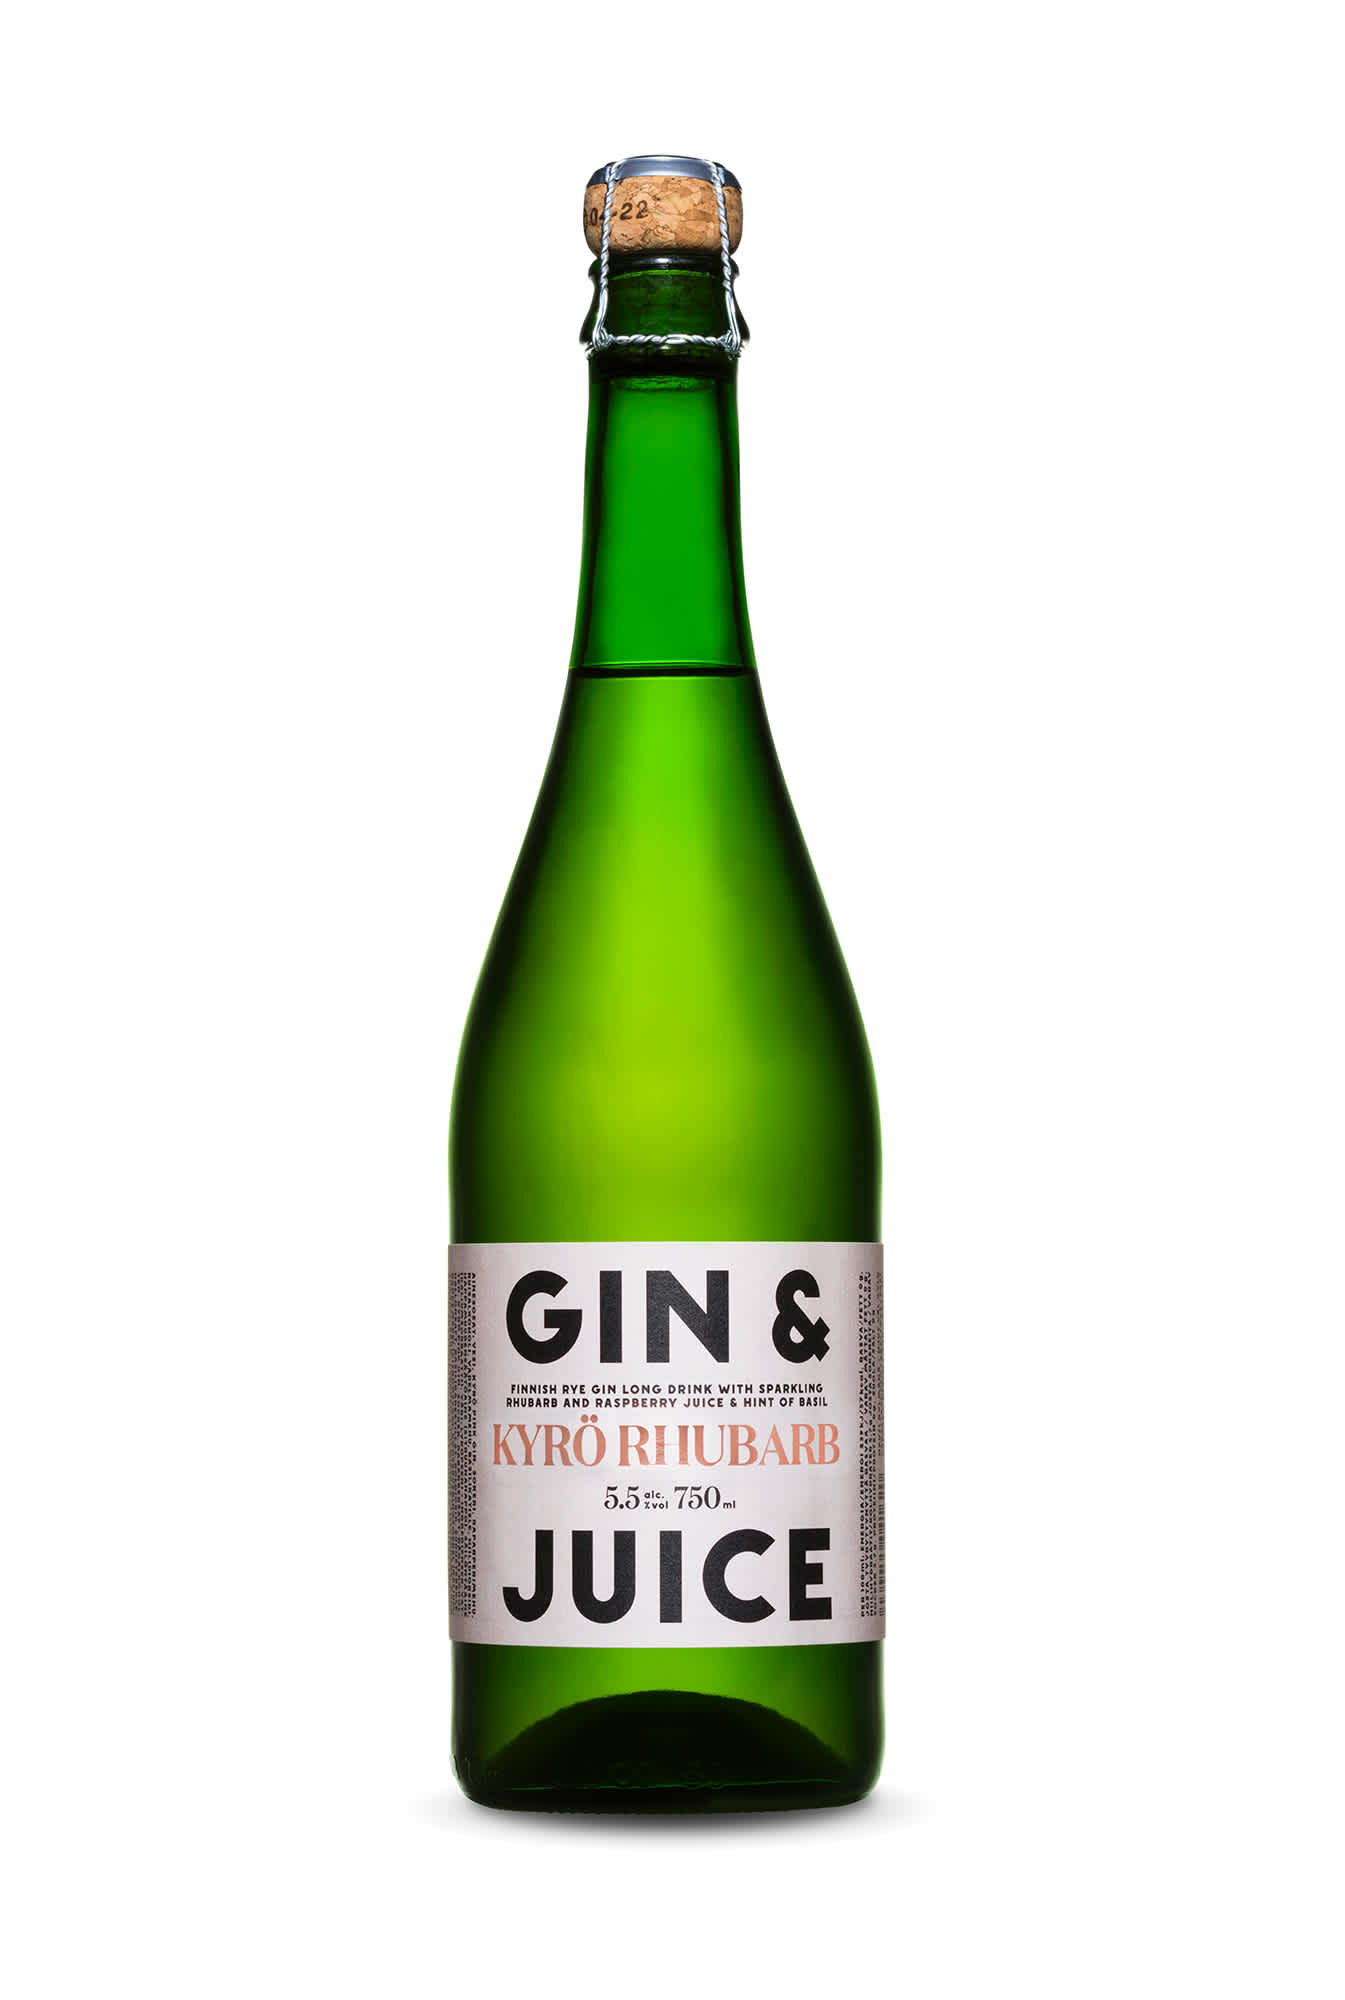 Kyrö Rhubarb Gin & Juice 75cl